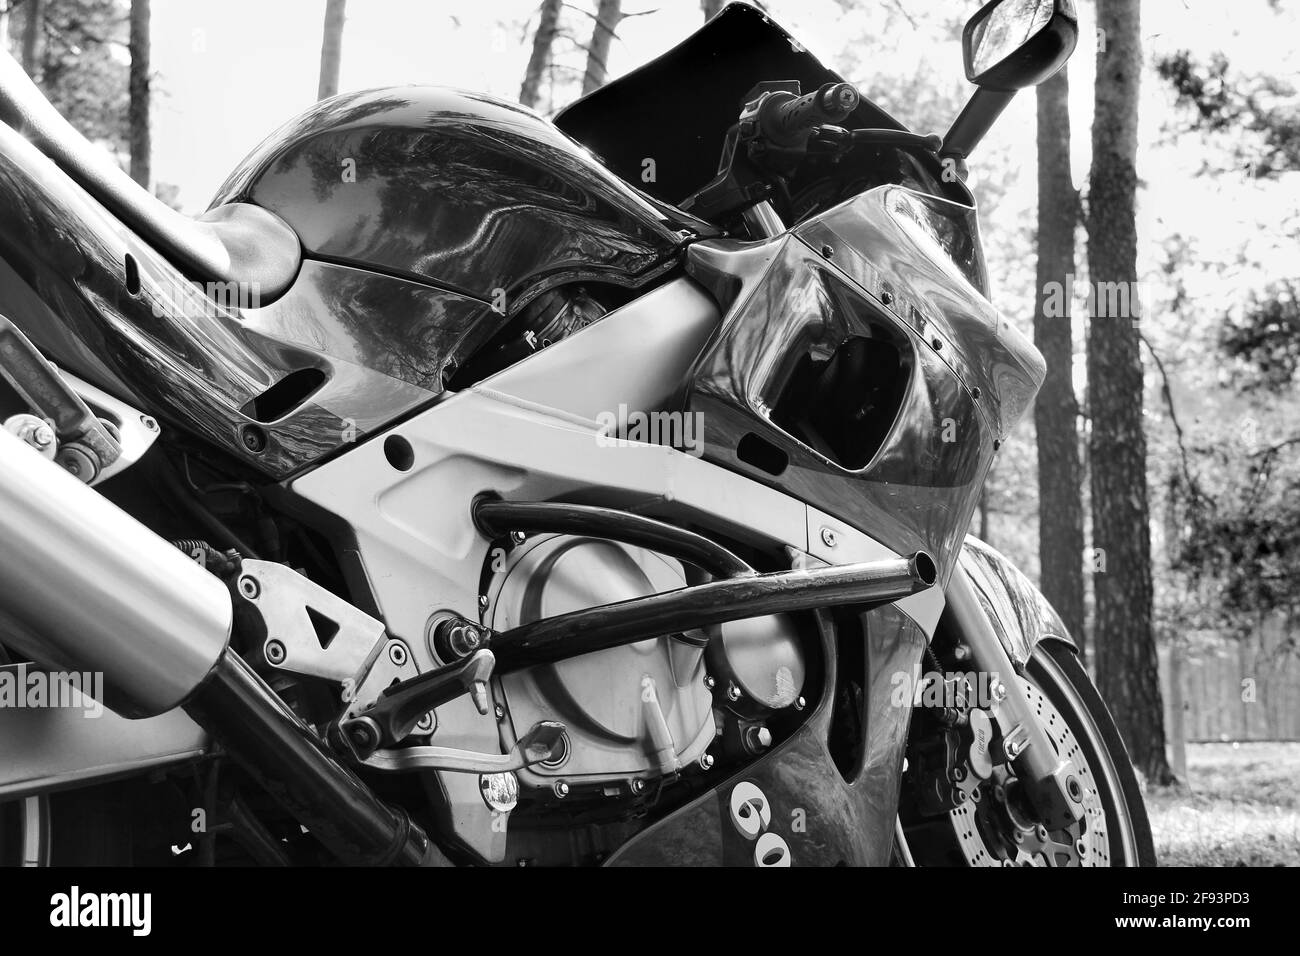 7 aprile 2020 - Chernihiv, Ucraina: Moto nella foresta. Kawasaki bici sportiva nella foresta. Foto in bianco e nero Foto Stock